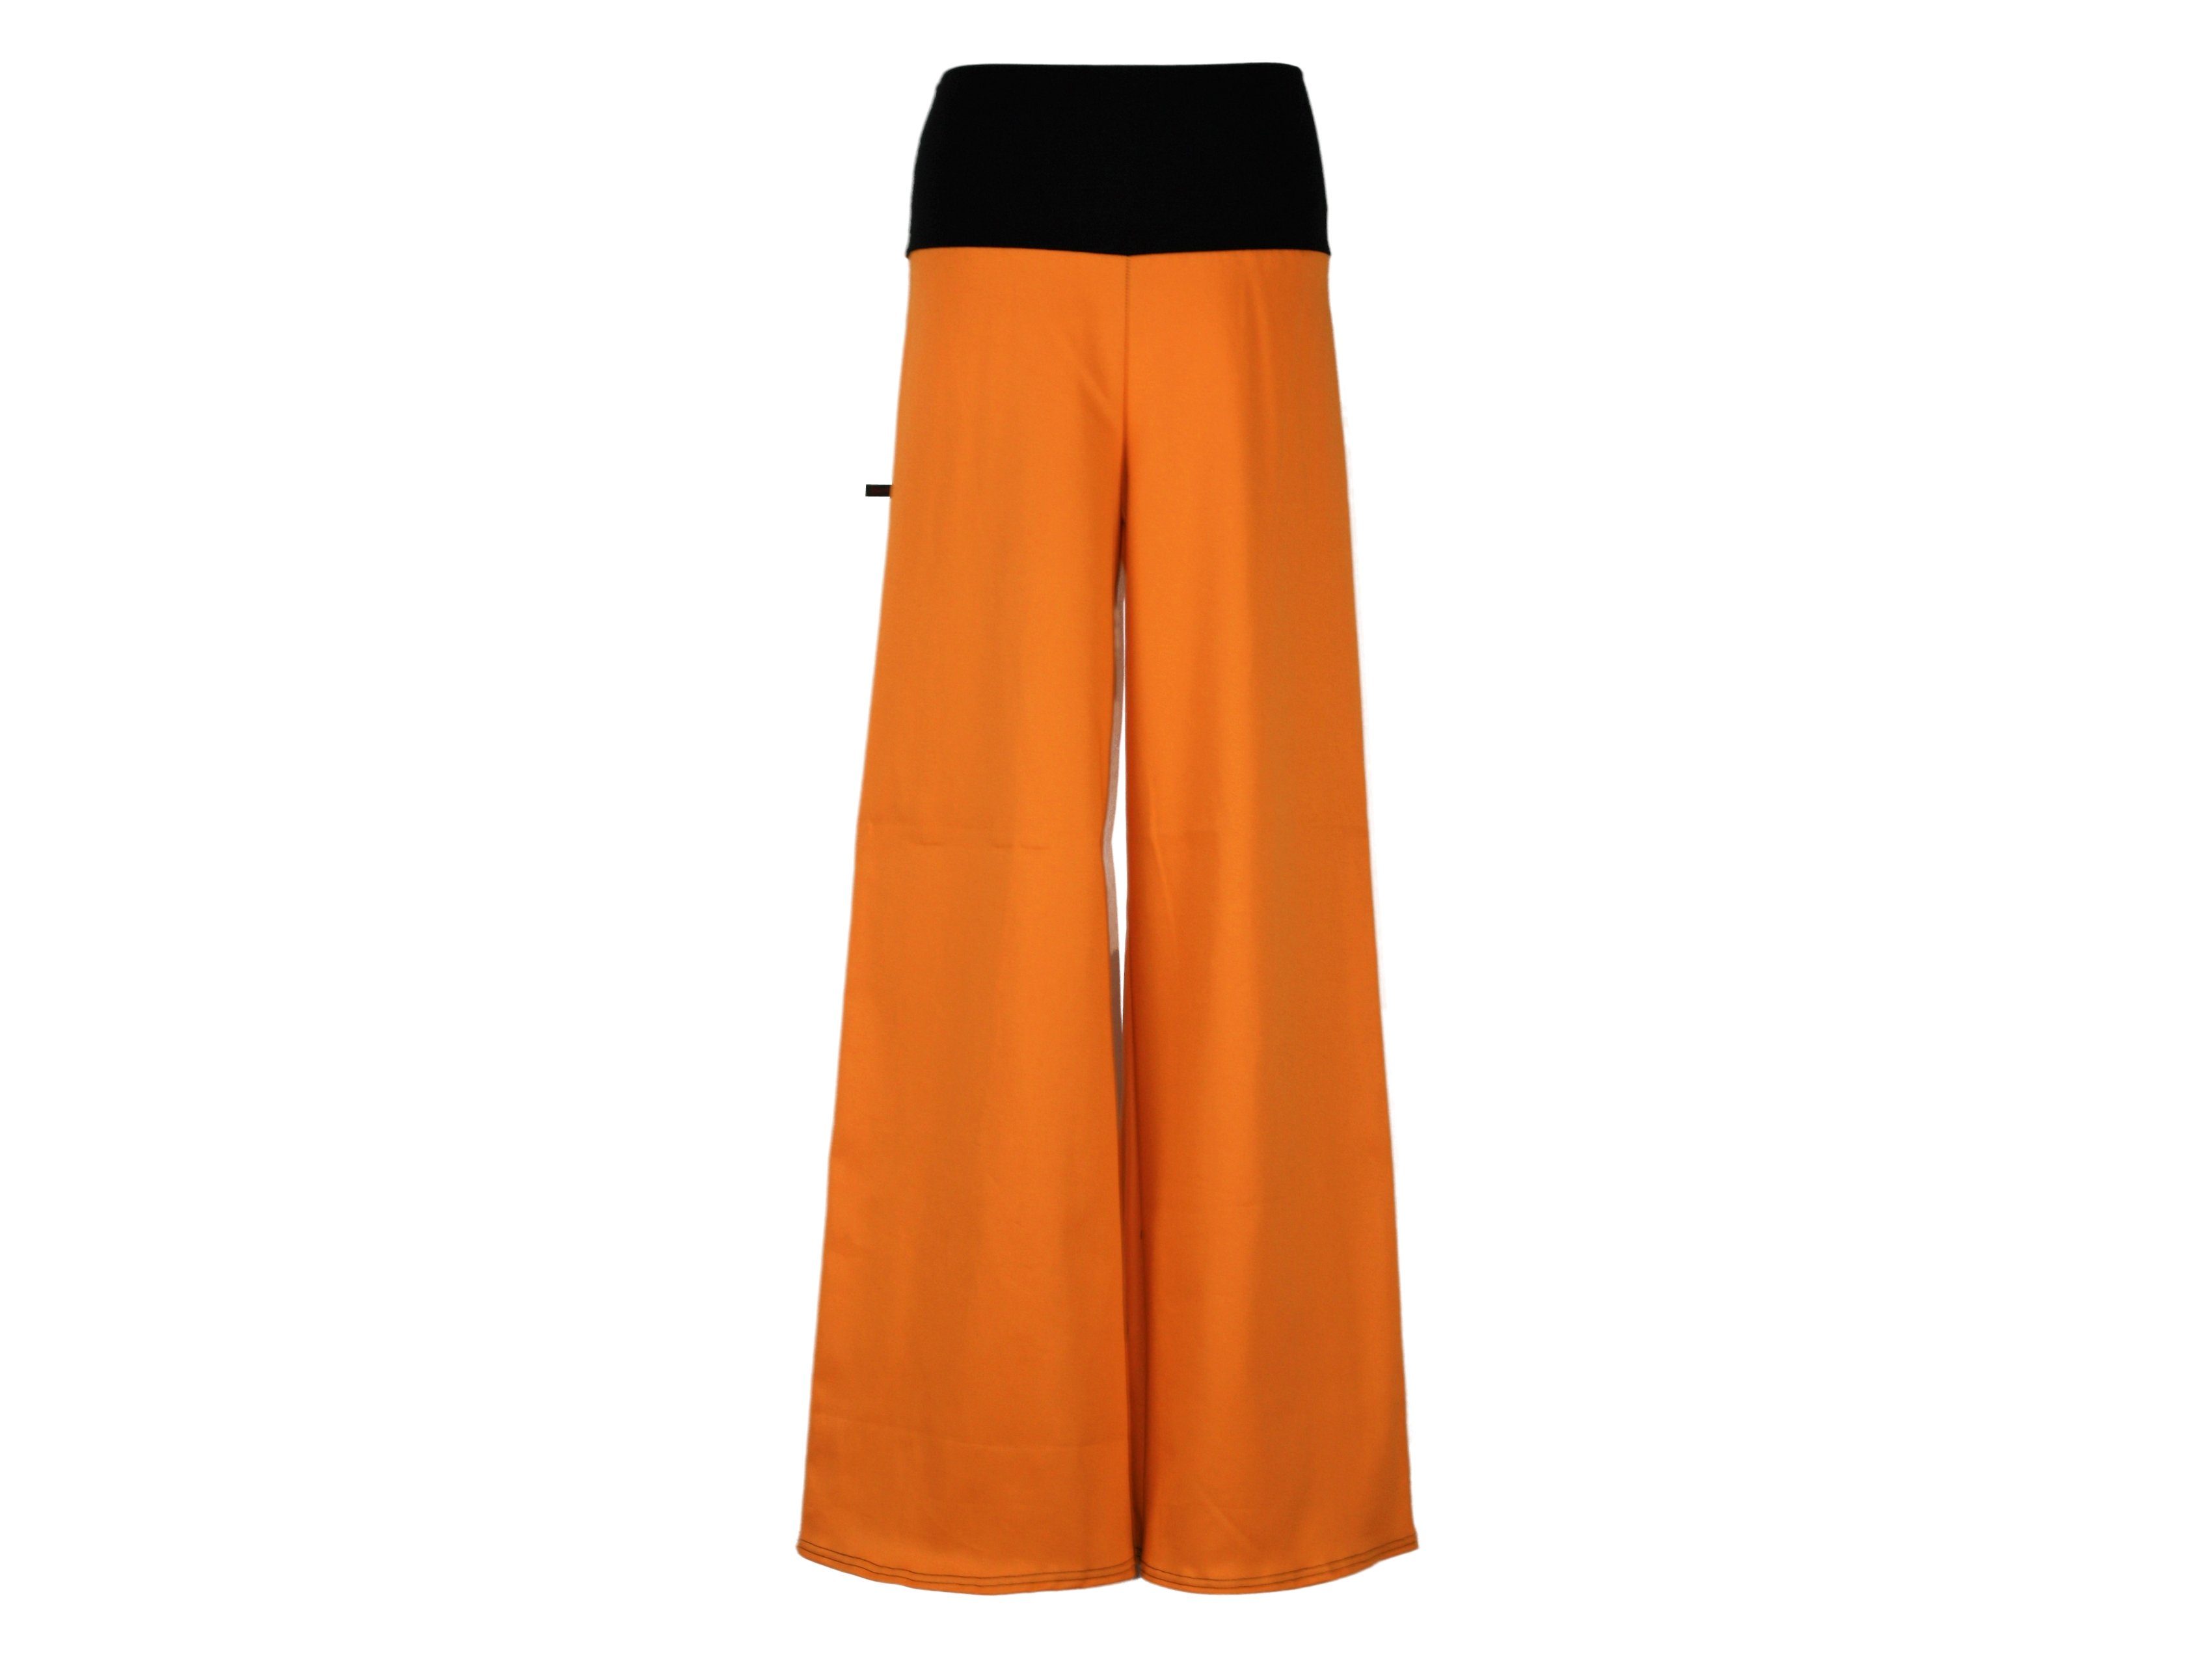 Stretch-Jeans Stil design Orange Bein weites dunkle Marlene